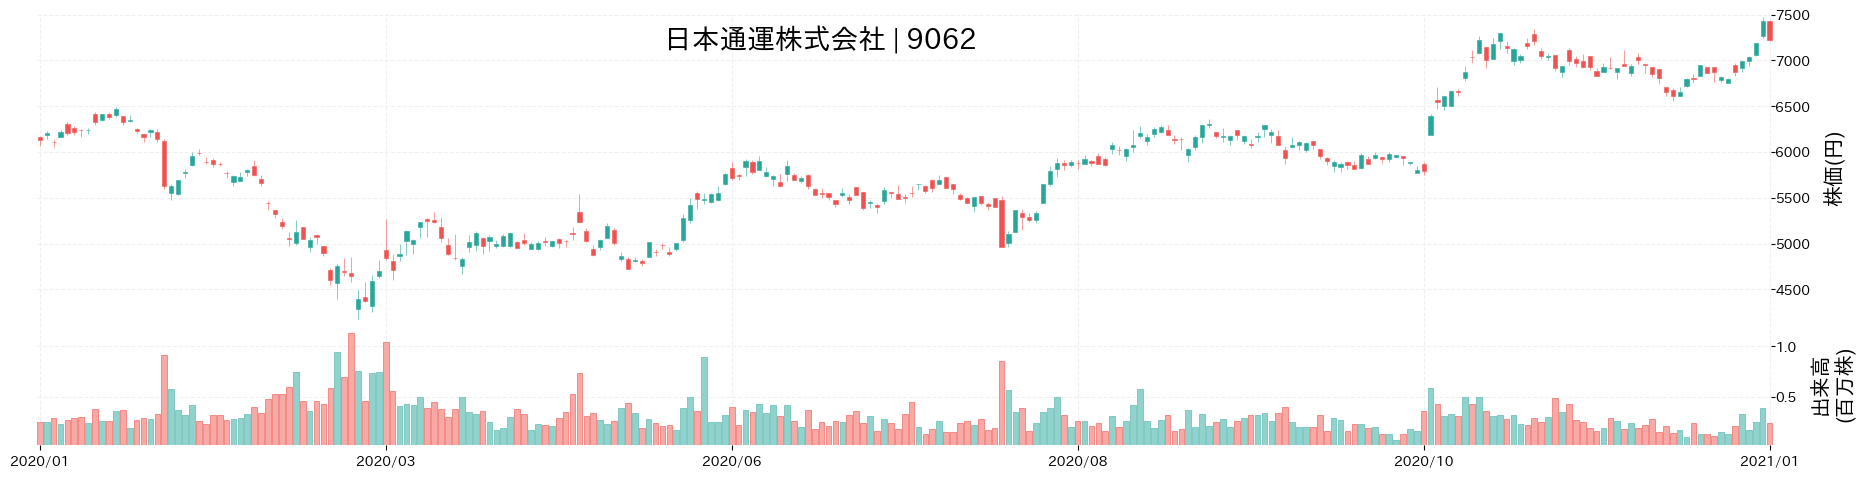 日本通運の株価推移(2020)